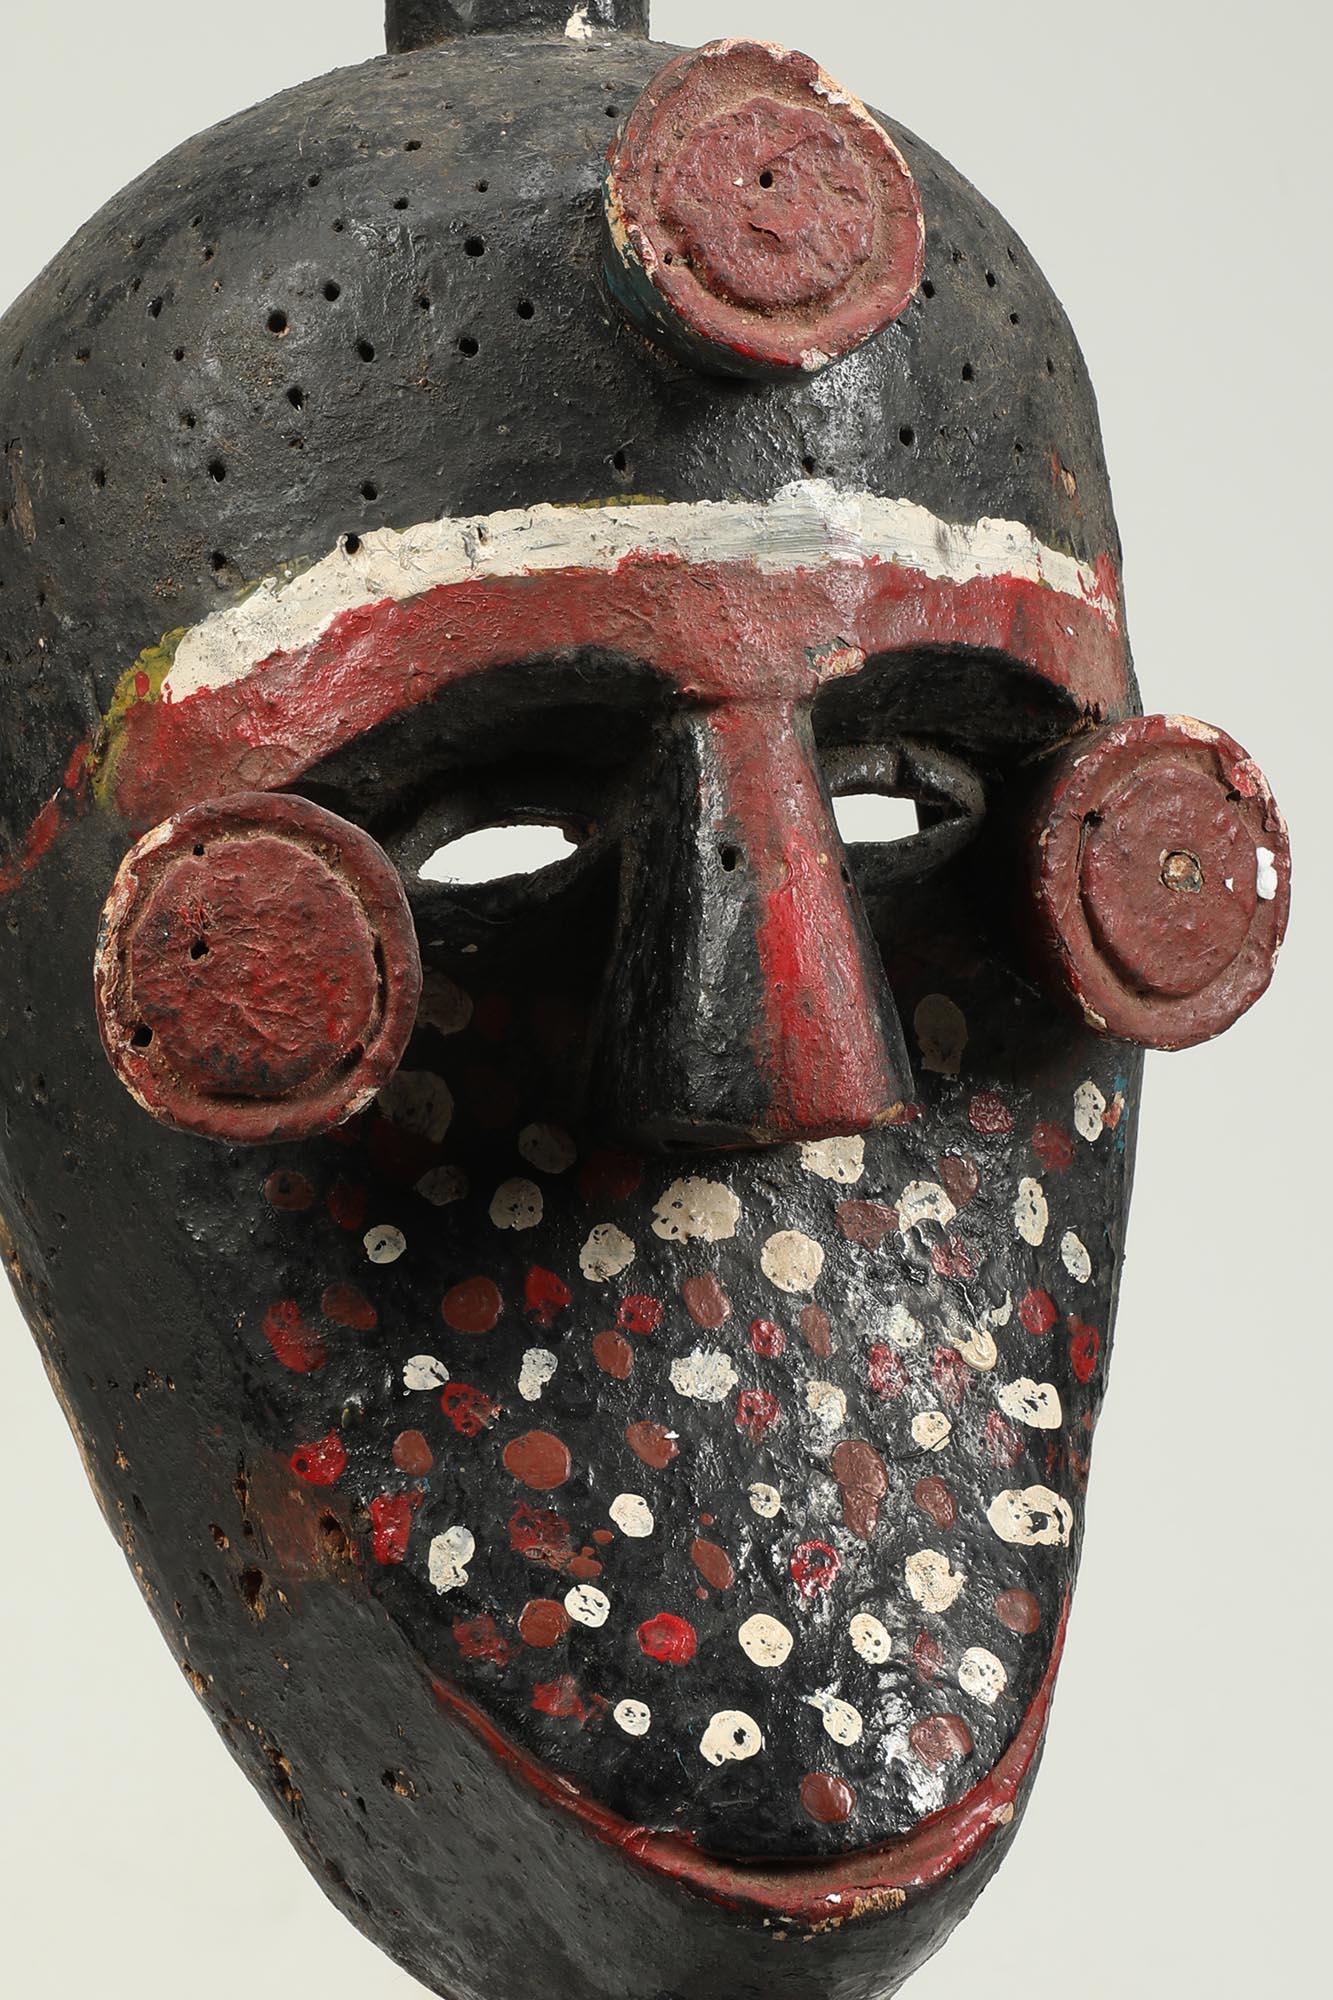 Fein bemalte Ibibio-Polychrom-Maske mit Figur auf dem Kopf, Nigeria Afrika. Ausdrucksstarke kleine Figur oben mit einer Hand auf dem Kopf, die andere hält den Bauch. Kreisförmige Erhebungen in den Augenwinkeln und in der Mitte der Stirn. Alte